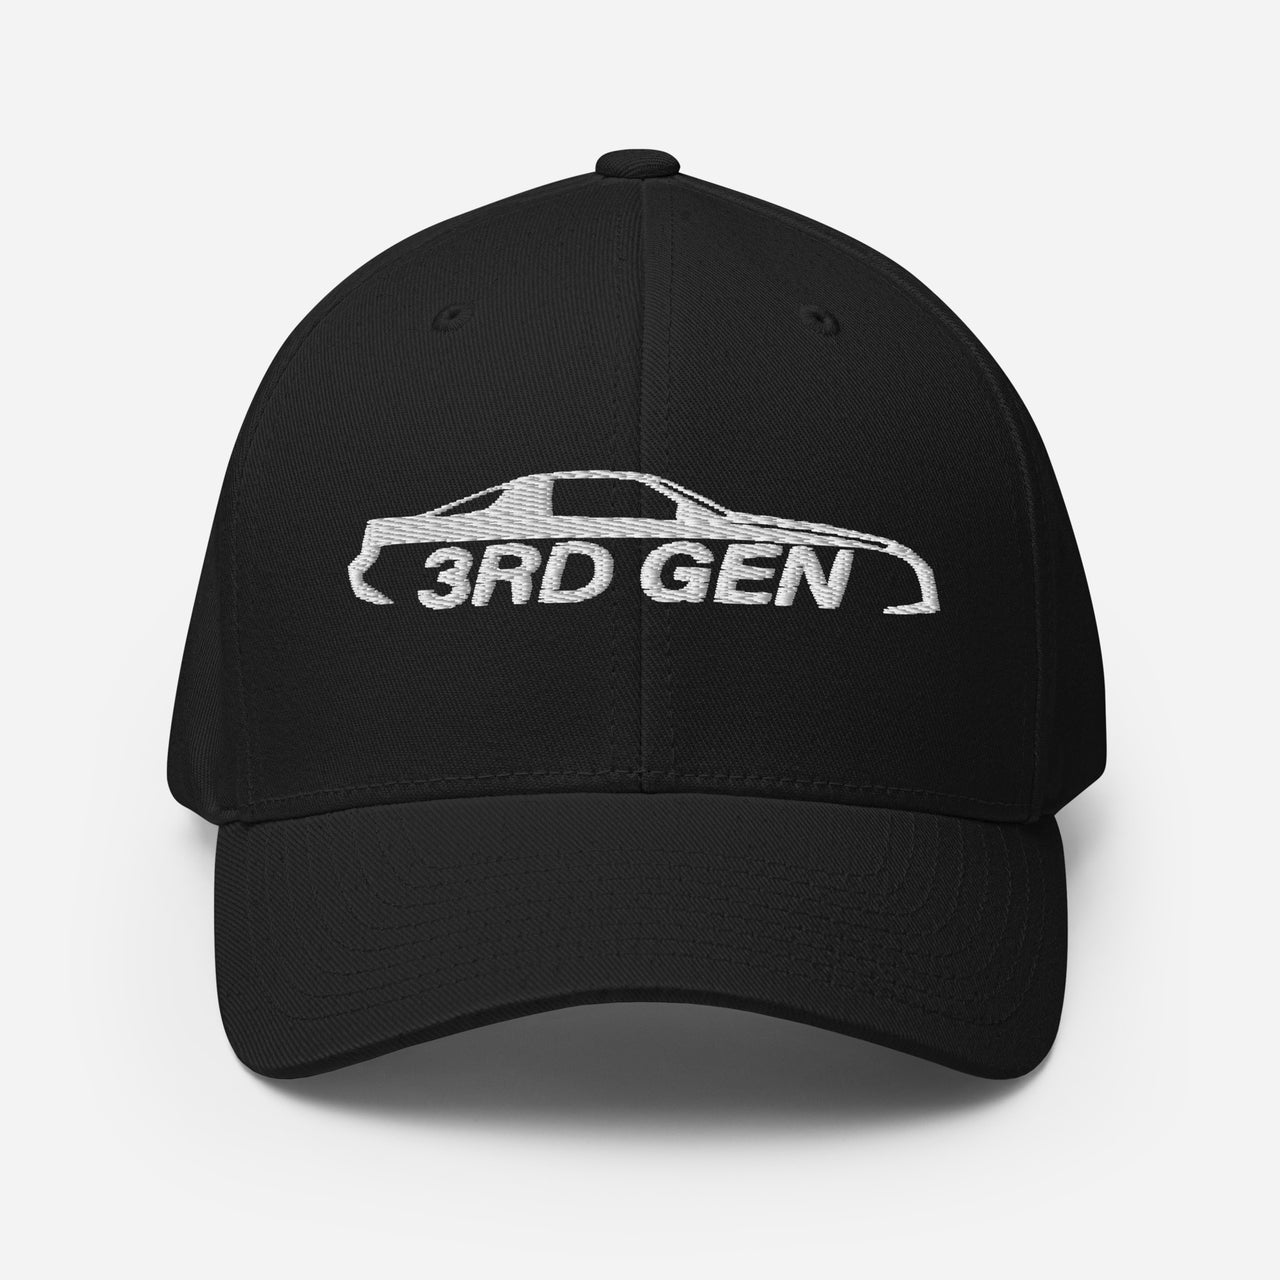 Third Gen Camaro Hat Flexfit Cap in black